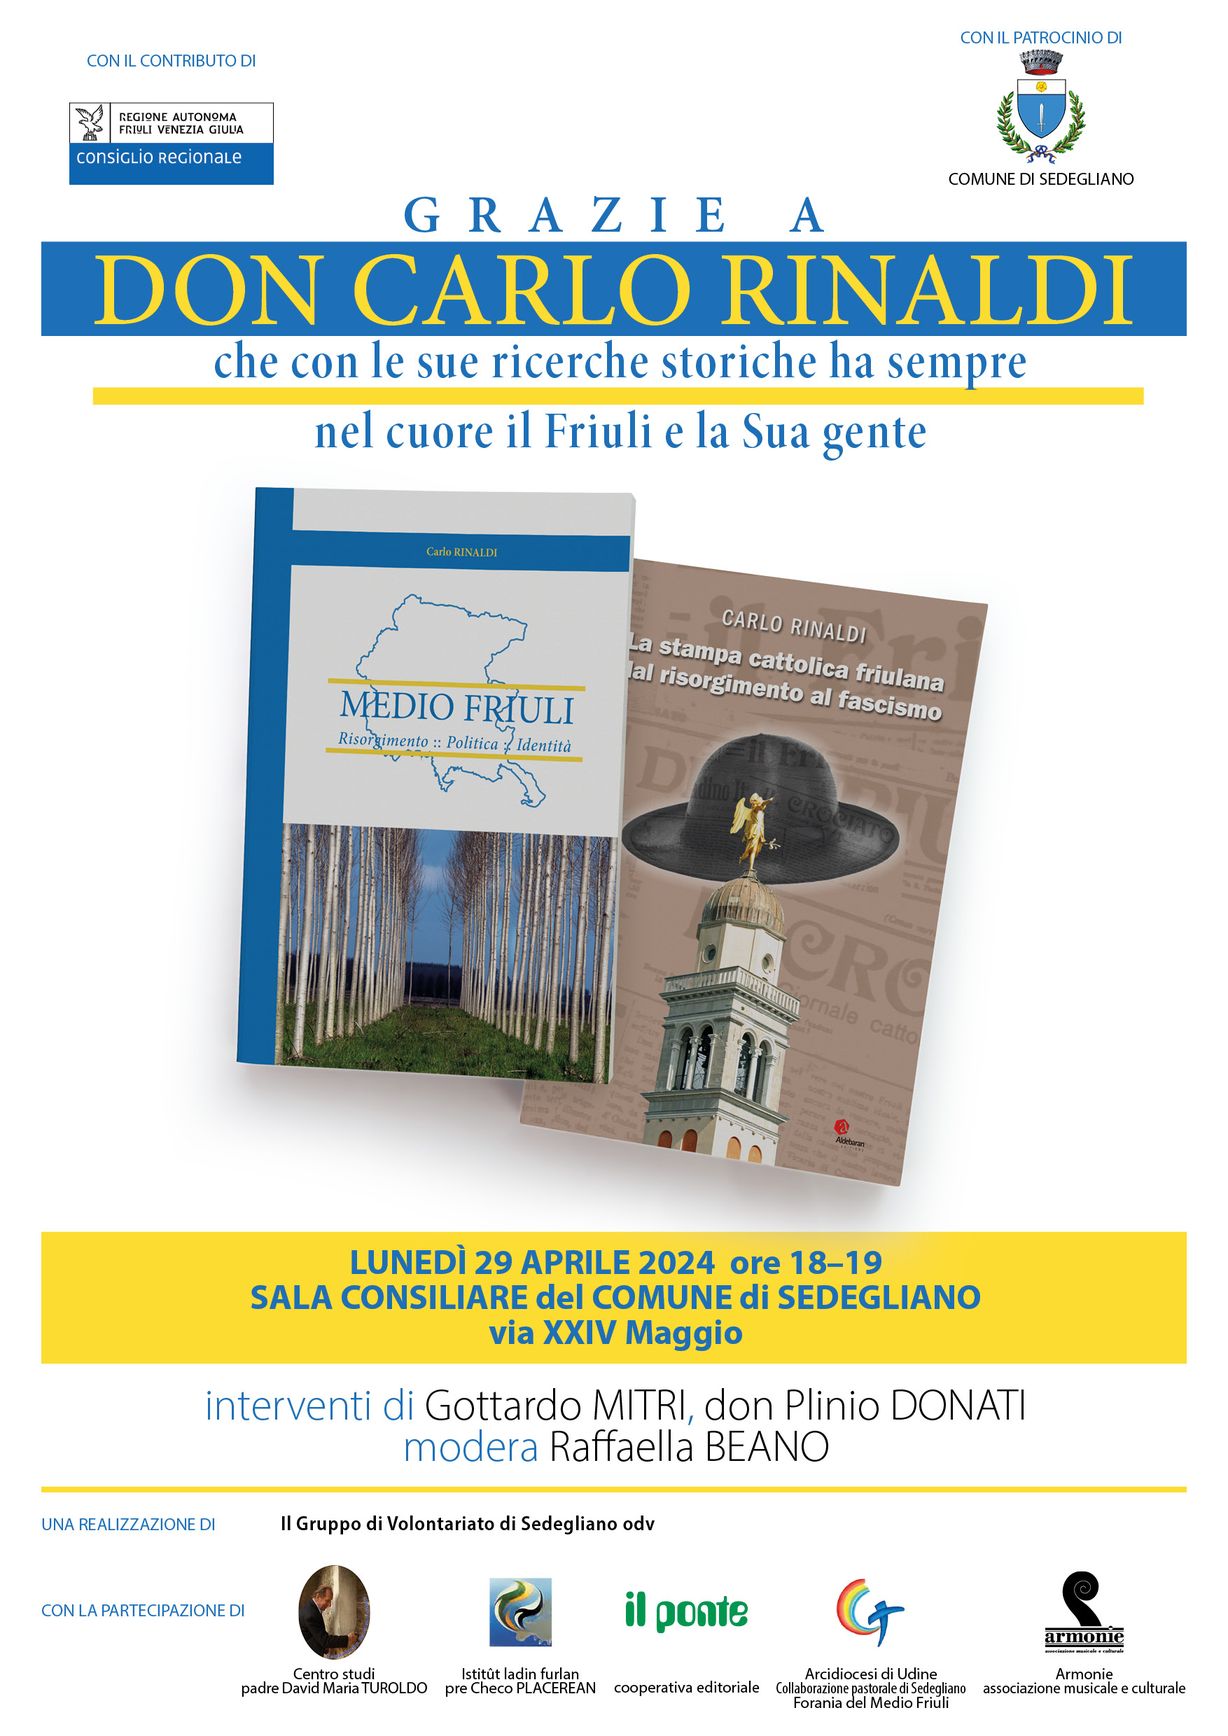 Medio Friuli: Risorgimento, politica, identità